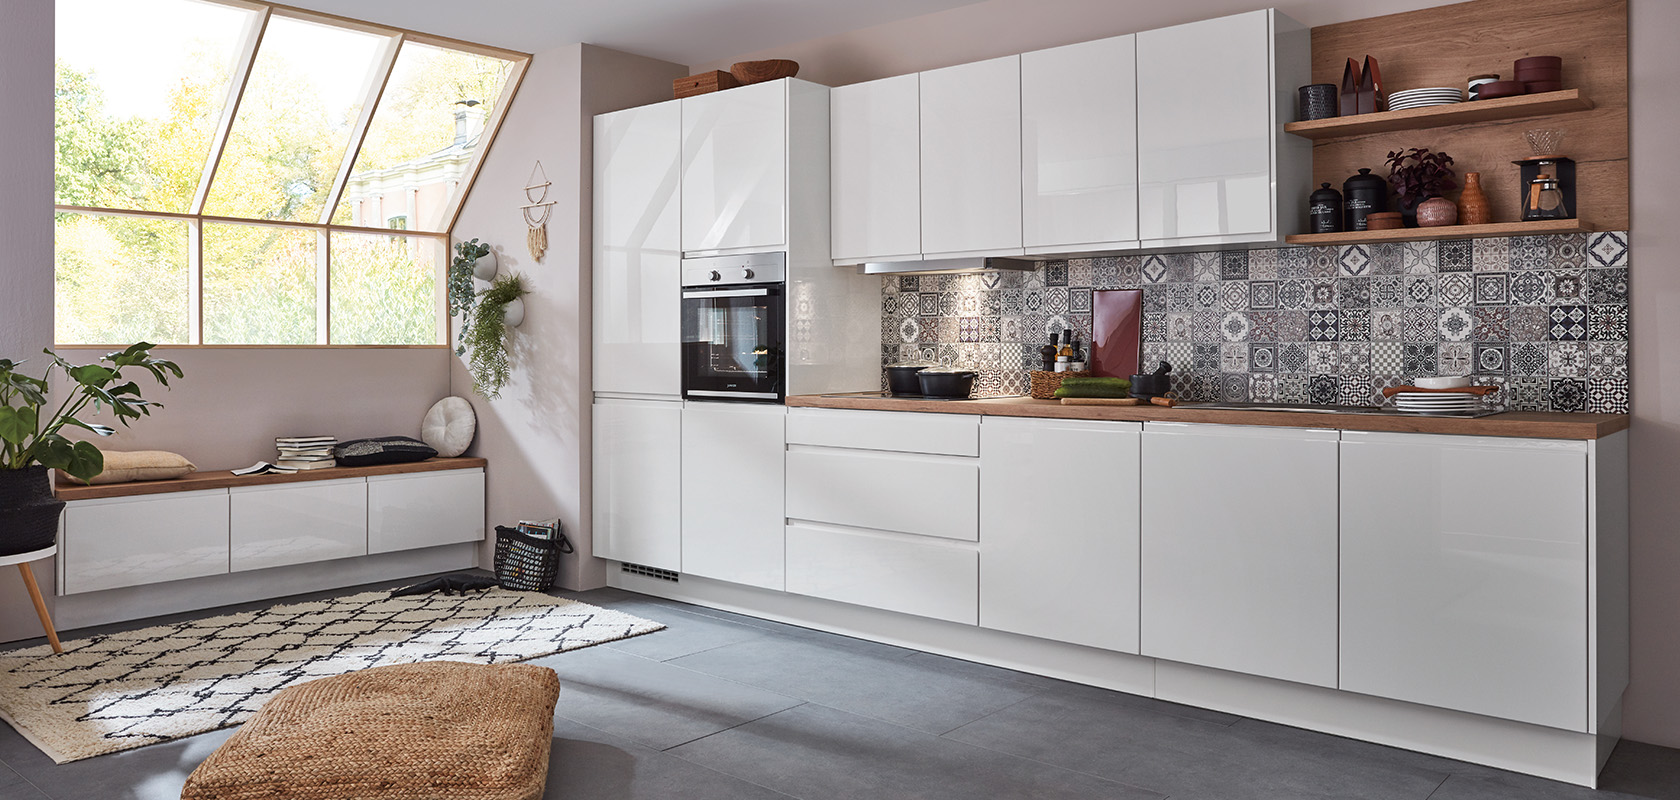 Interni di cucina moderna con mobili bianchi puliti, piastrelle geometriche per il retro cucina e dettagli in legno, che trasmettono uno spazio accogliente e stiloso per cucinare e vivere.